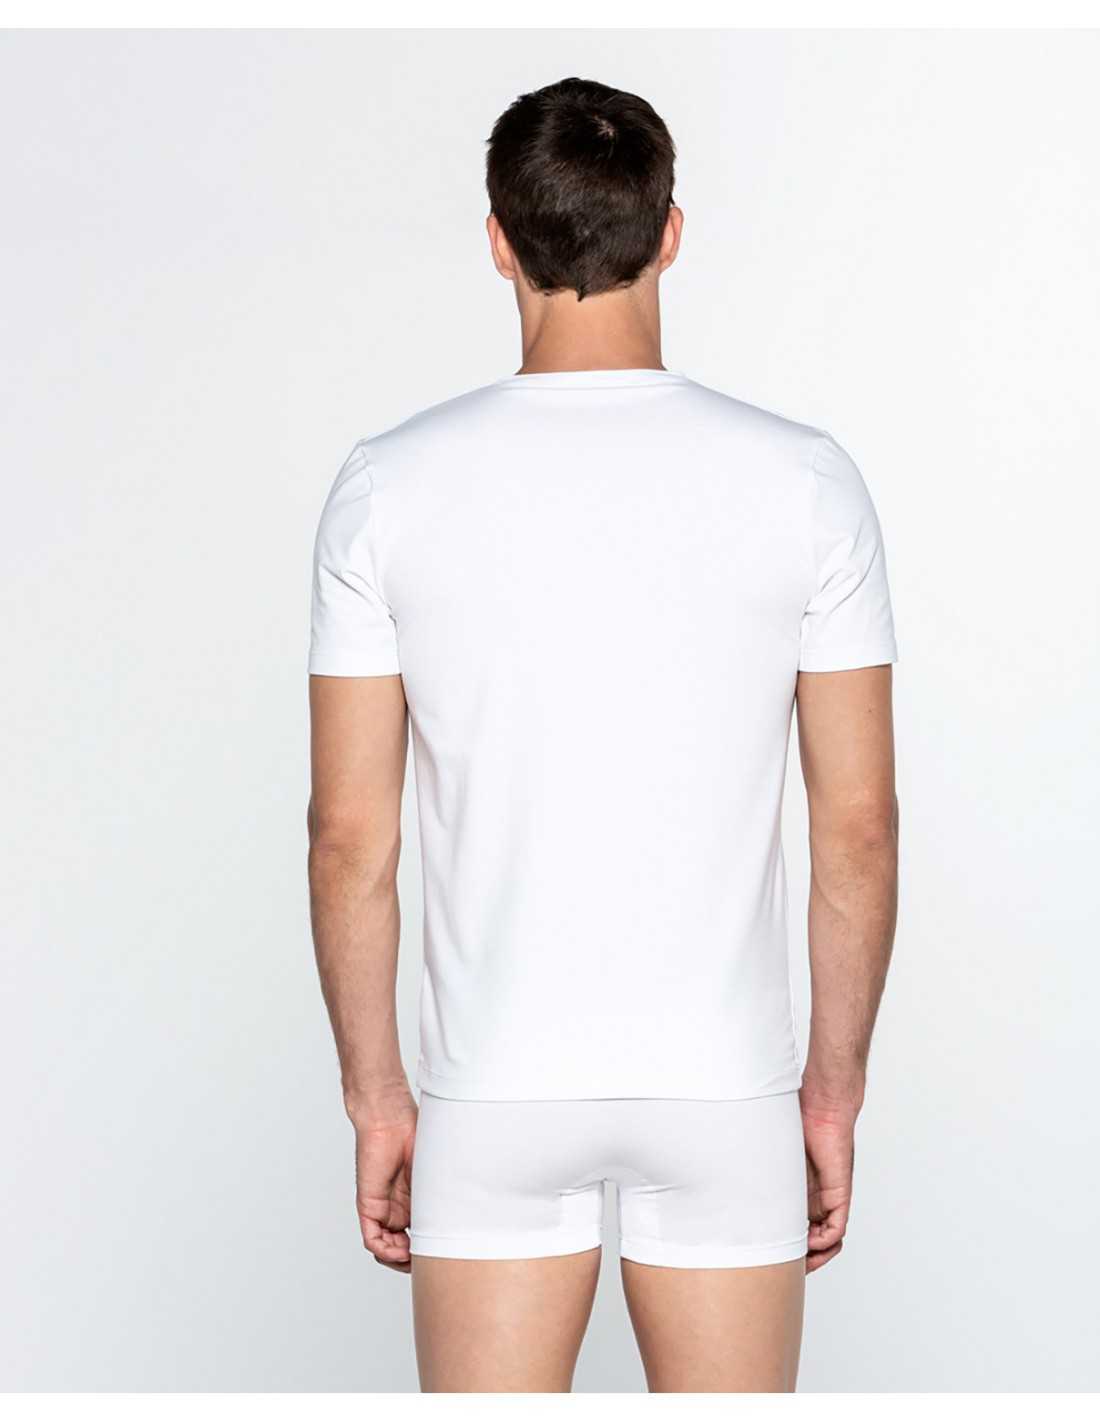 Camiseta Punto Blanco cuello pico Ecologix COLOR: gris, blanco, negro; TALLAS: s, m, l, xl Composición: algodón -